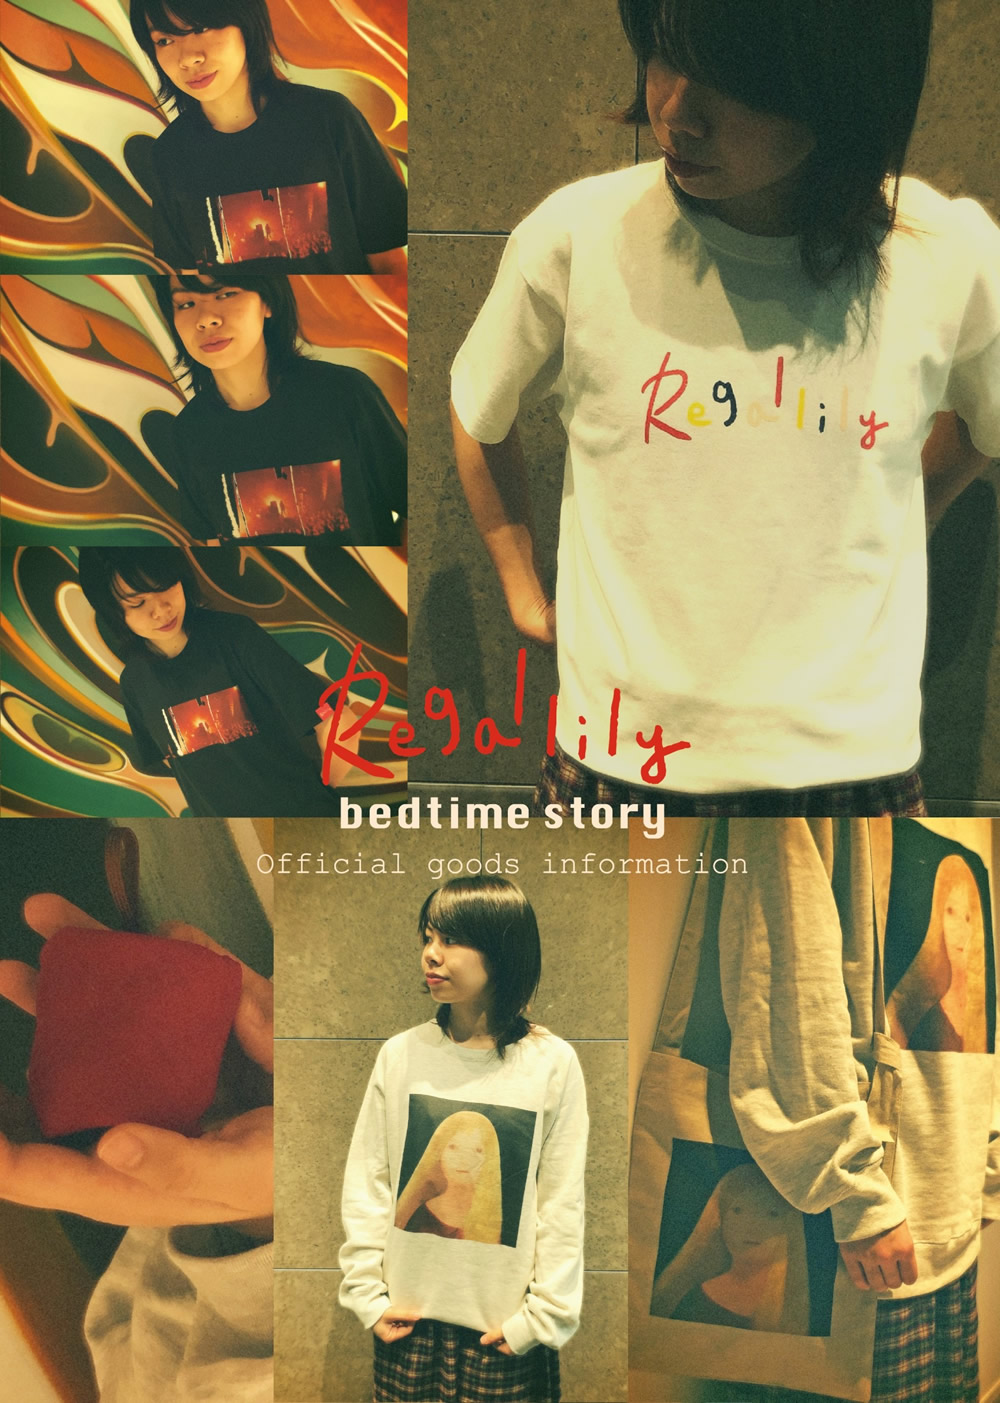 Regal Lily 1st Full Album "bedtime story"